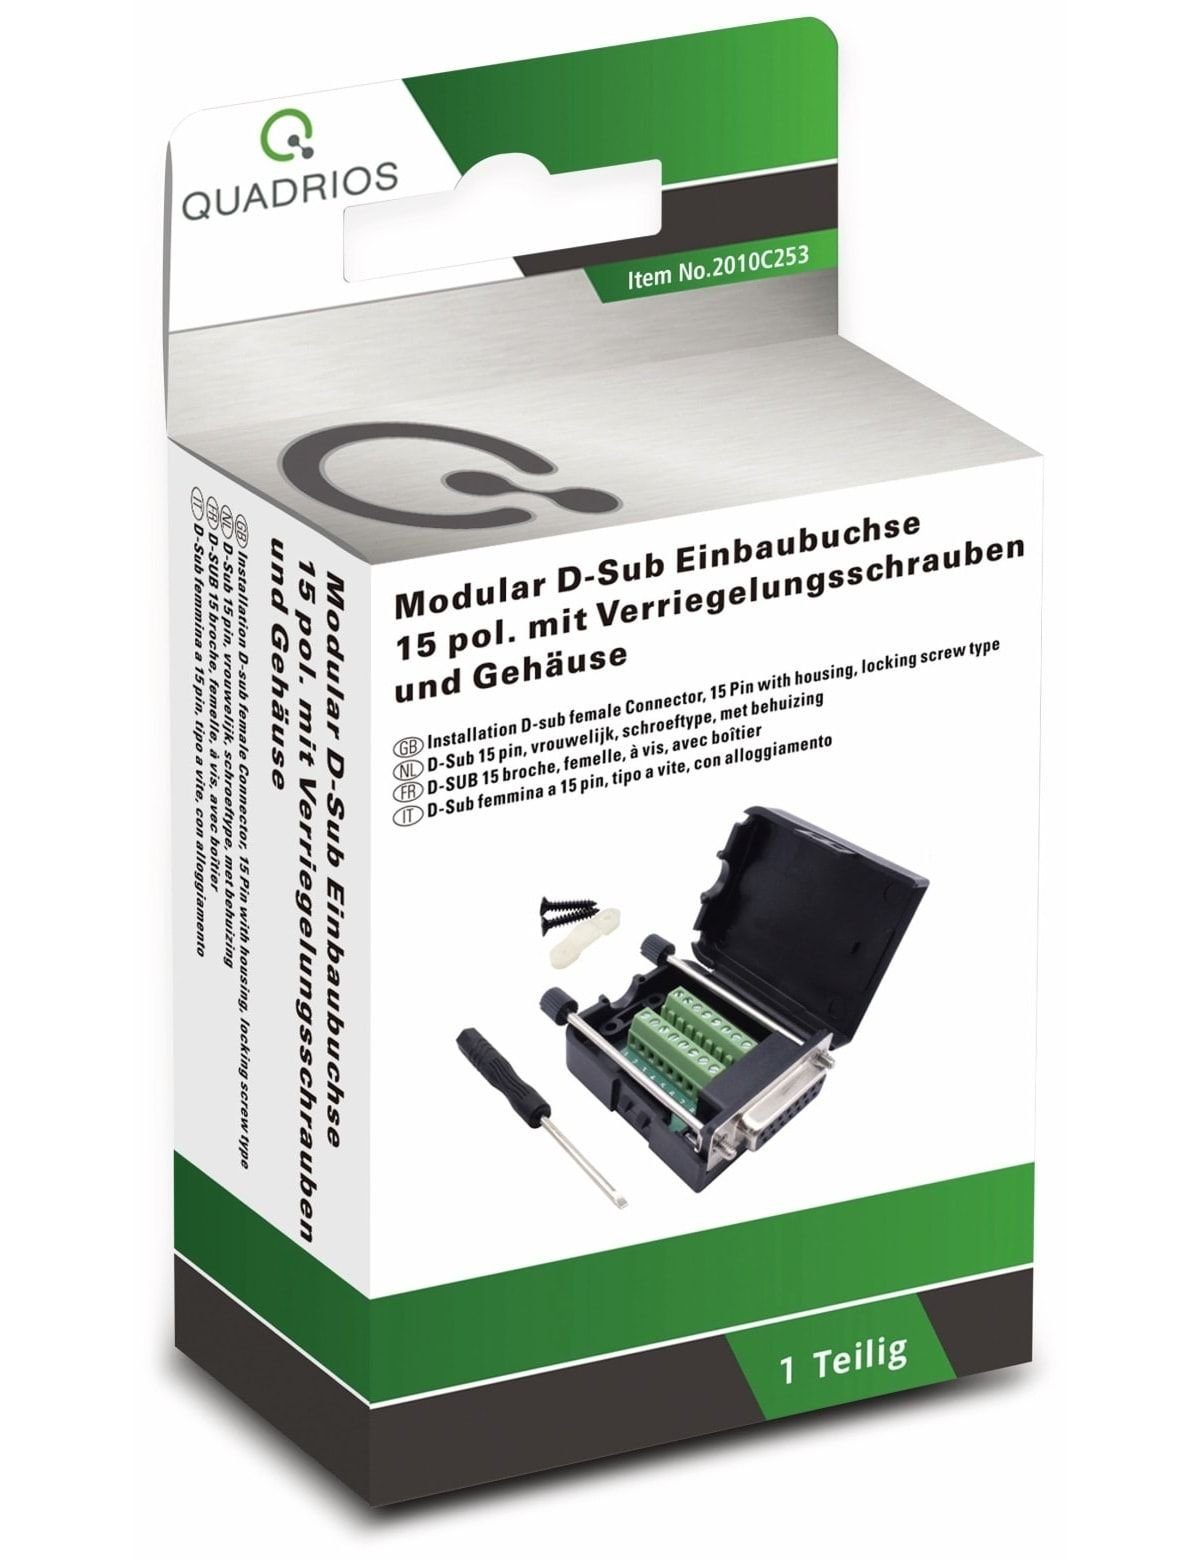 Klemmen QUADRIOS, D-Sub USB-Modular-Set, Quadrios 2010C253,